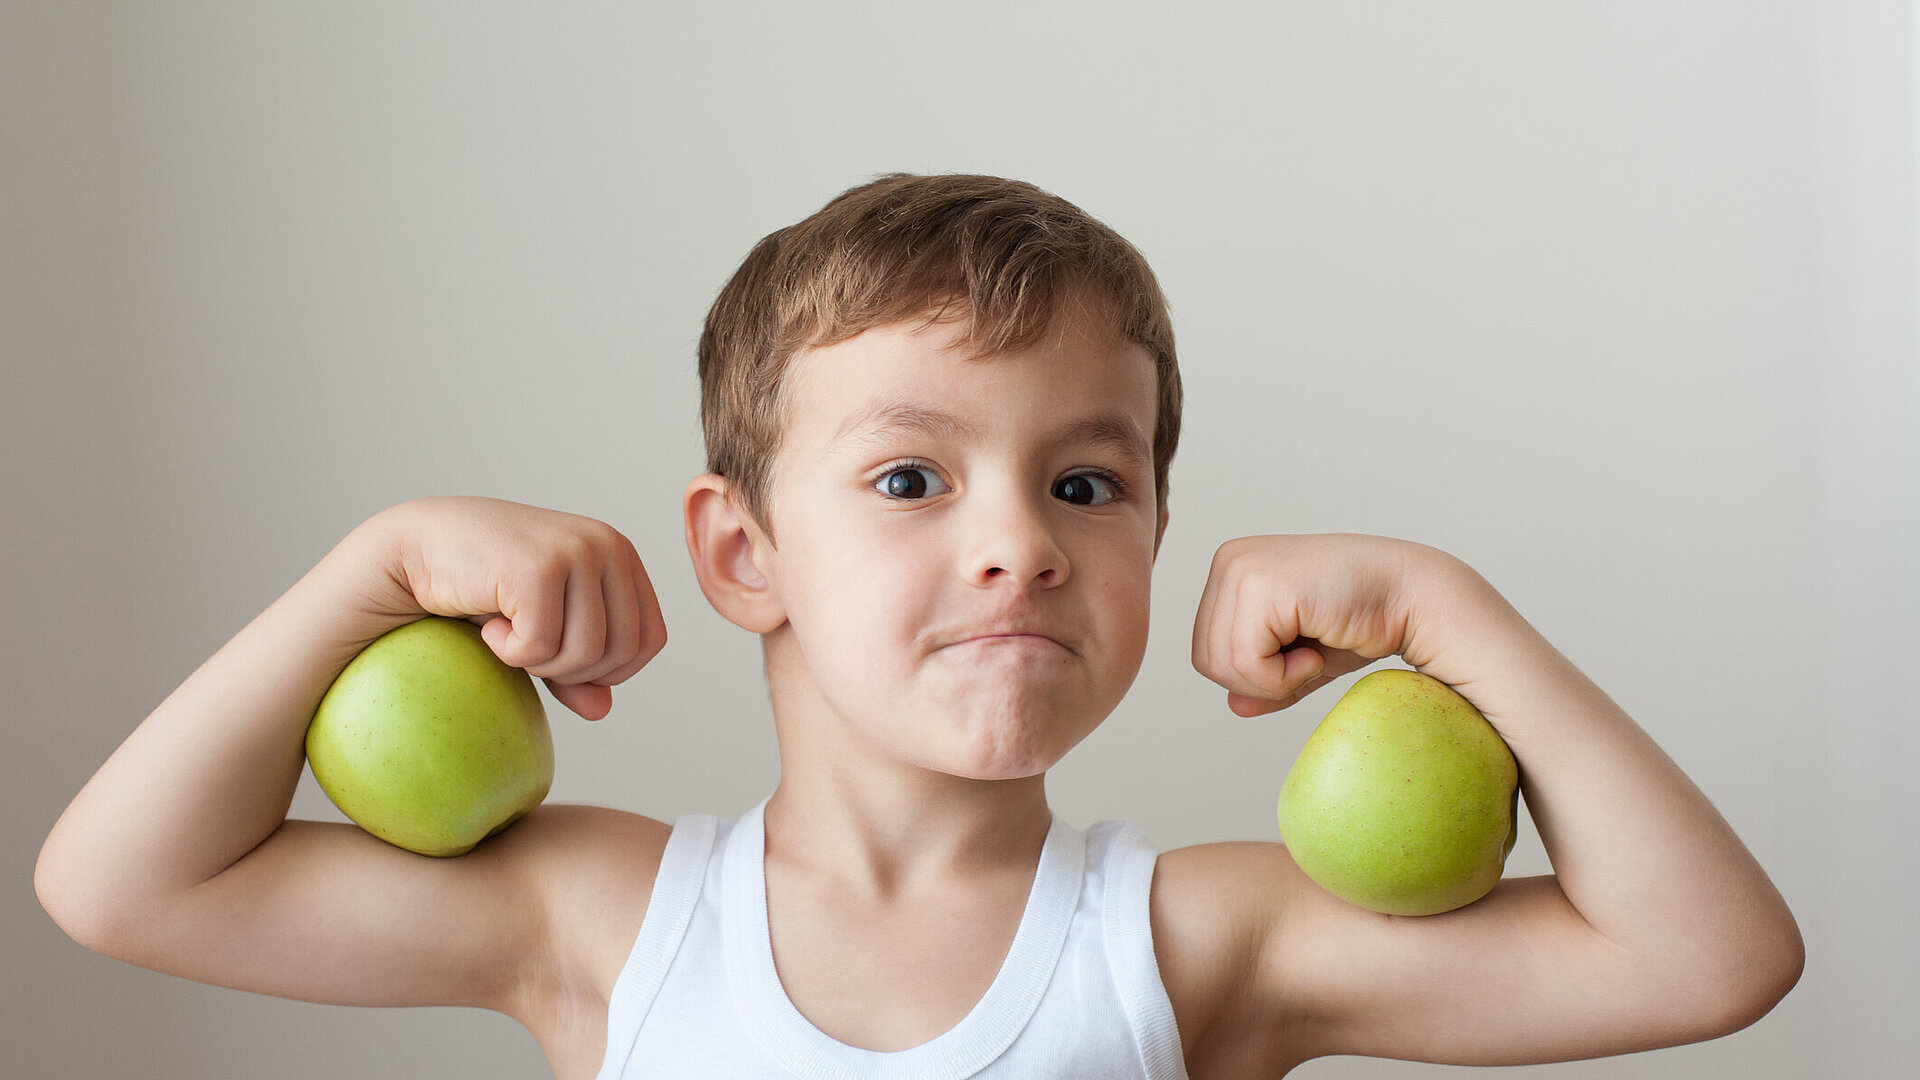 Kind spannt Armmuskeln an und hält zwei äpfel zwischen den Armen